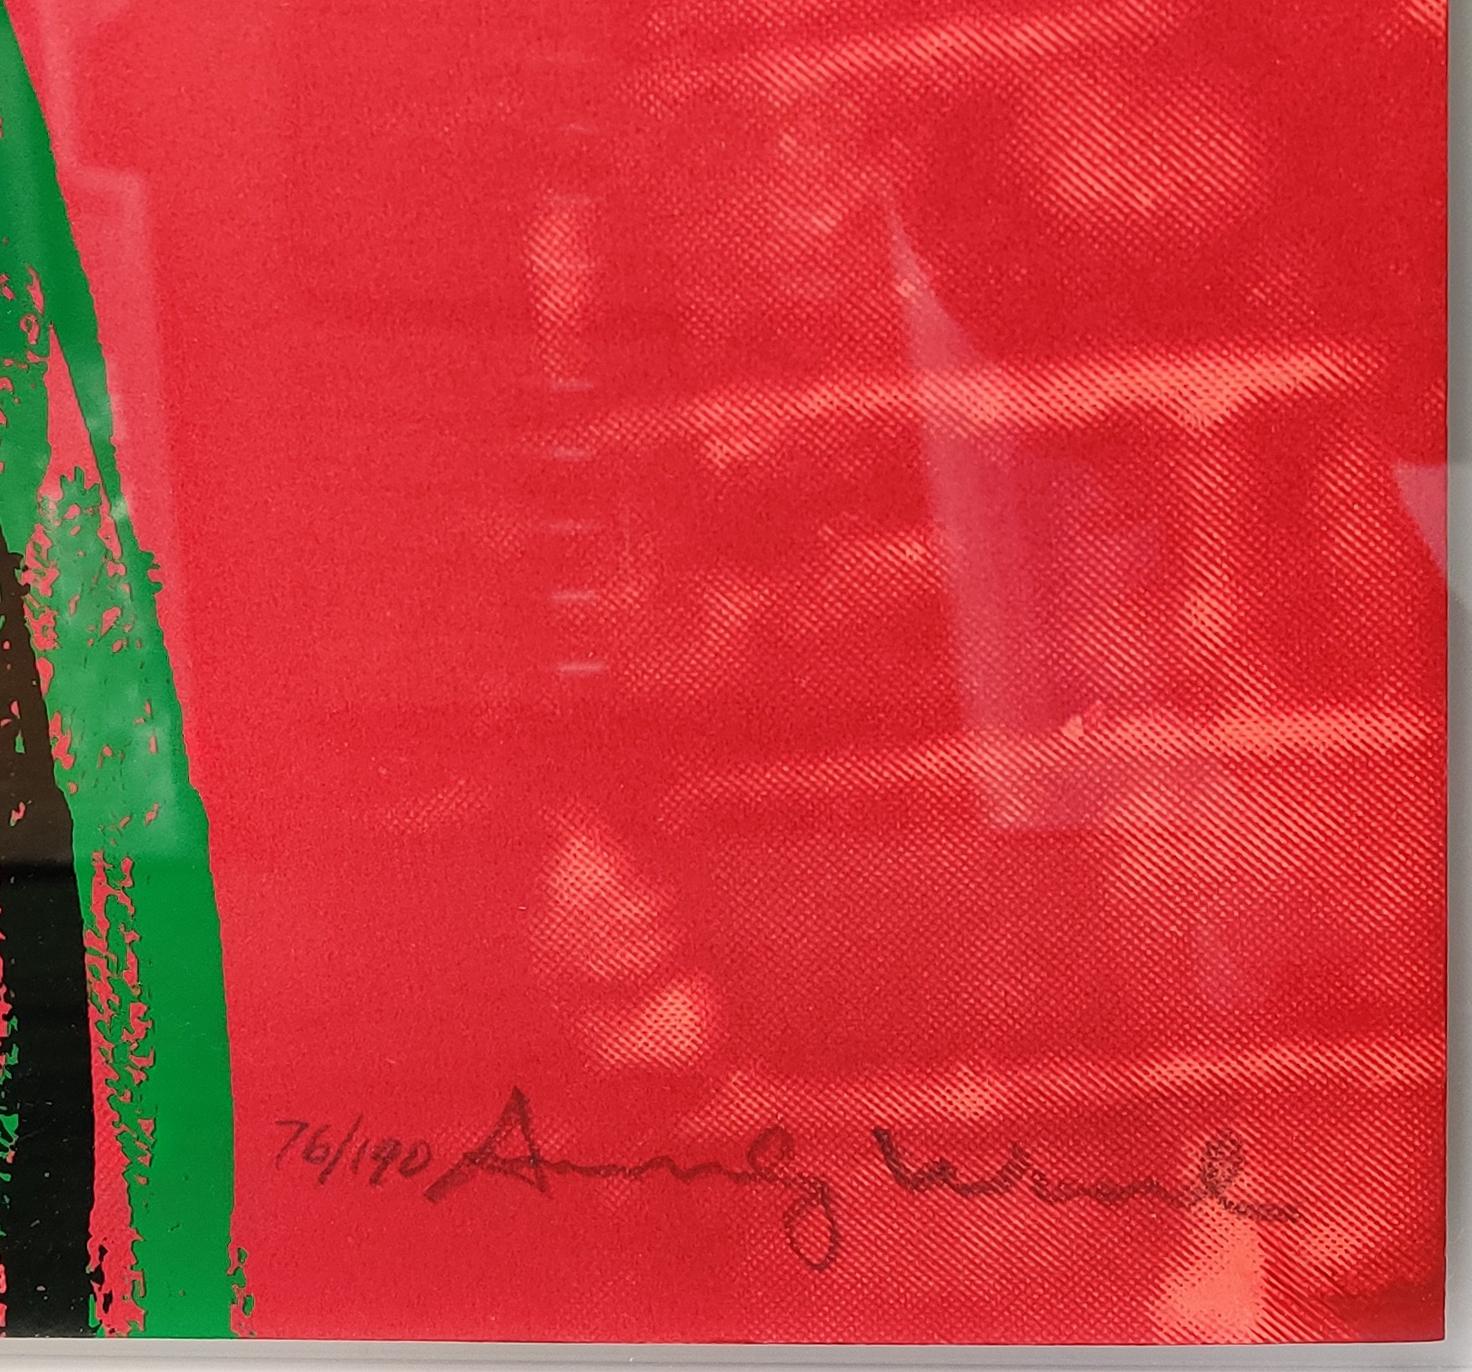 ADS: VERZIERUNG AUF EINER KETTE (JAMES DEAN) FS II.355 – Print von Andy Warhol